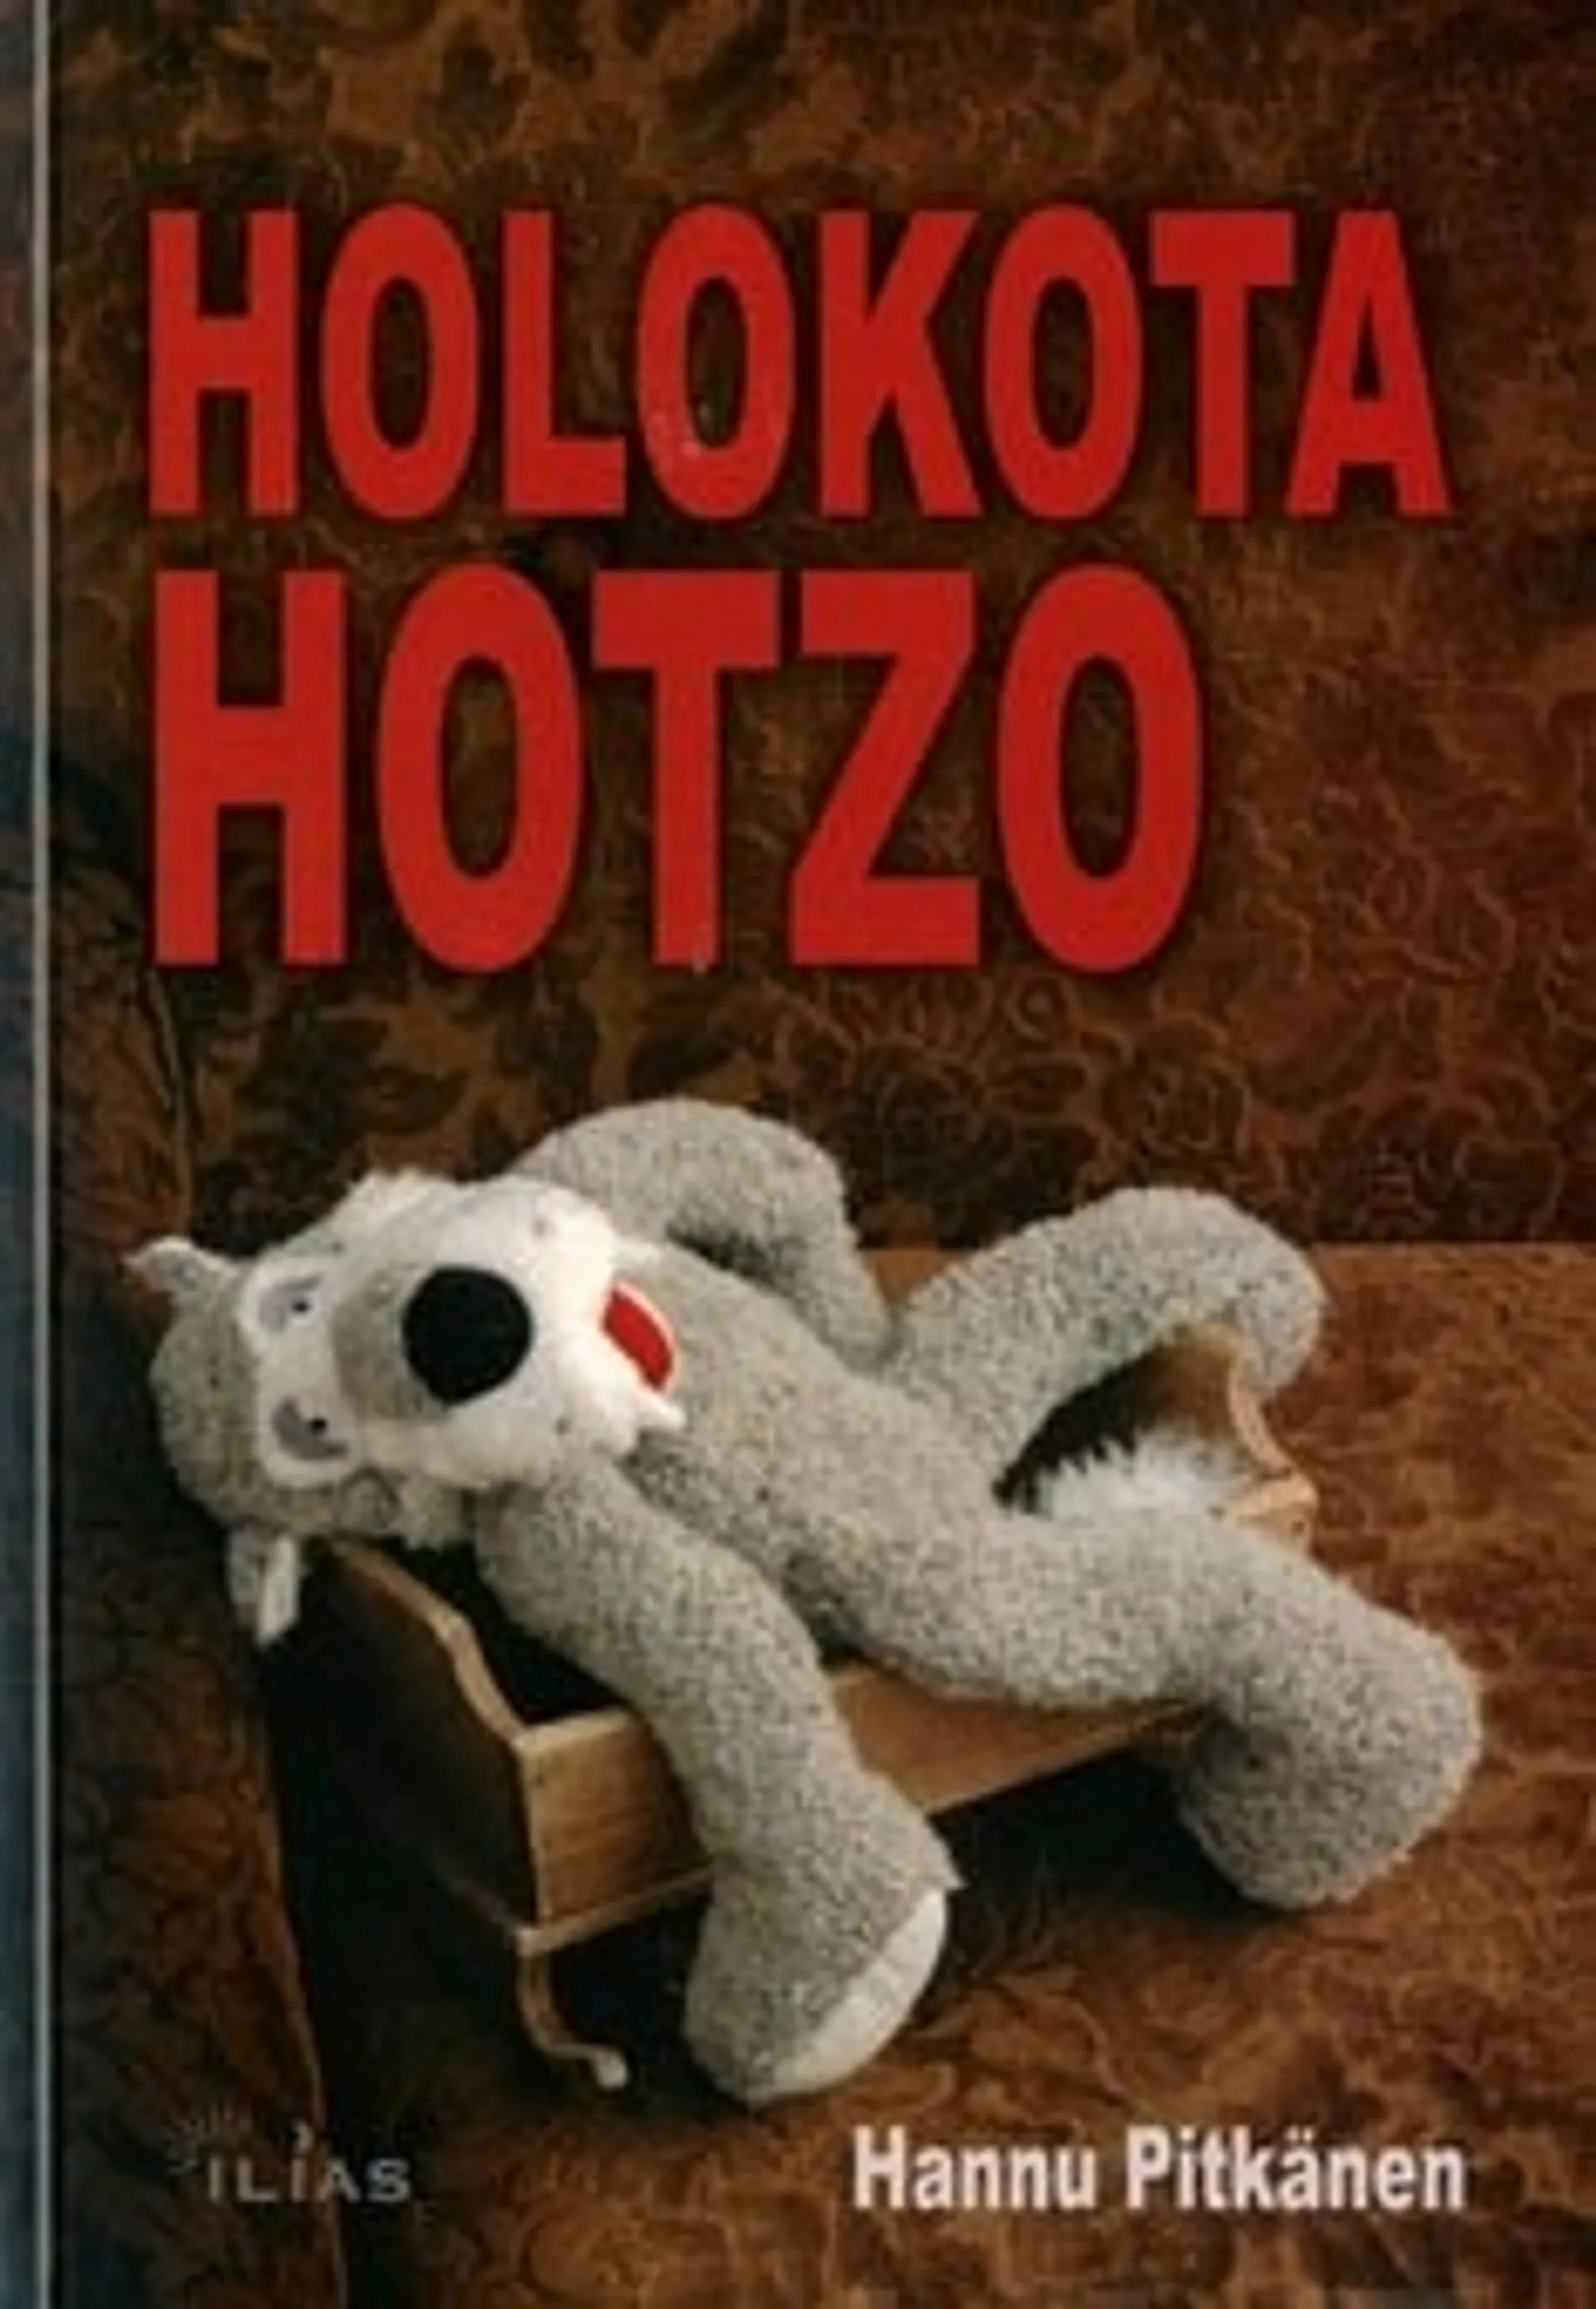 Holokota Hotzo